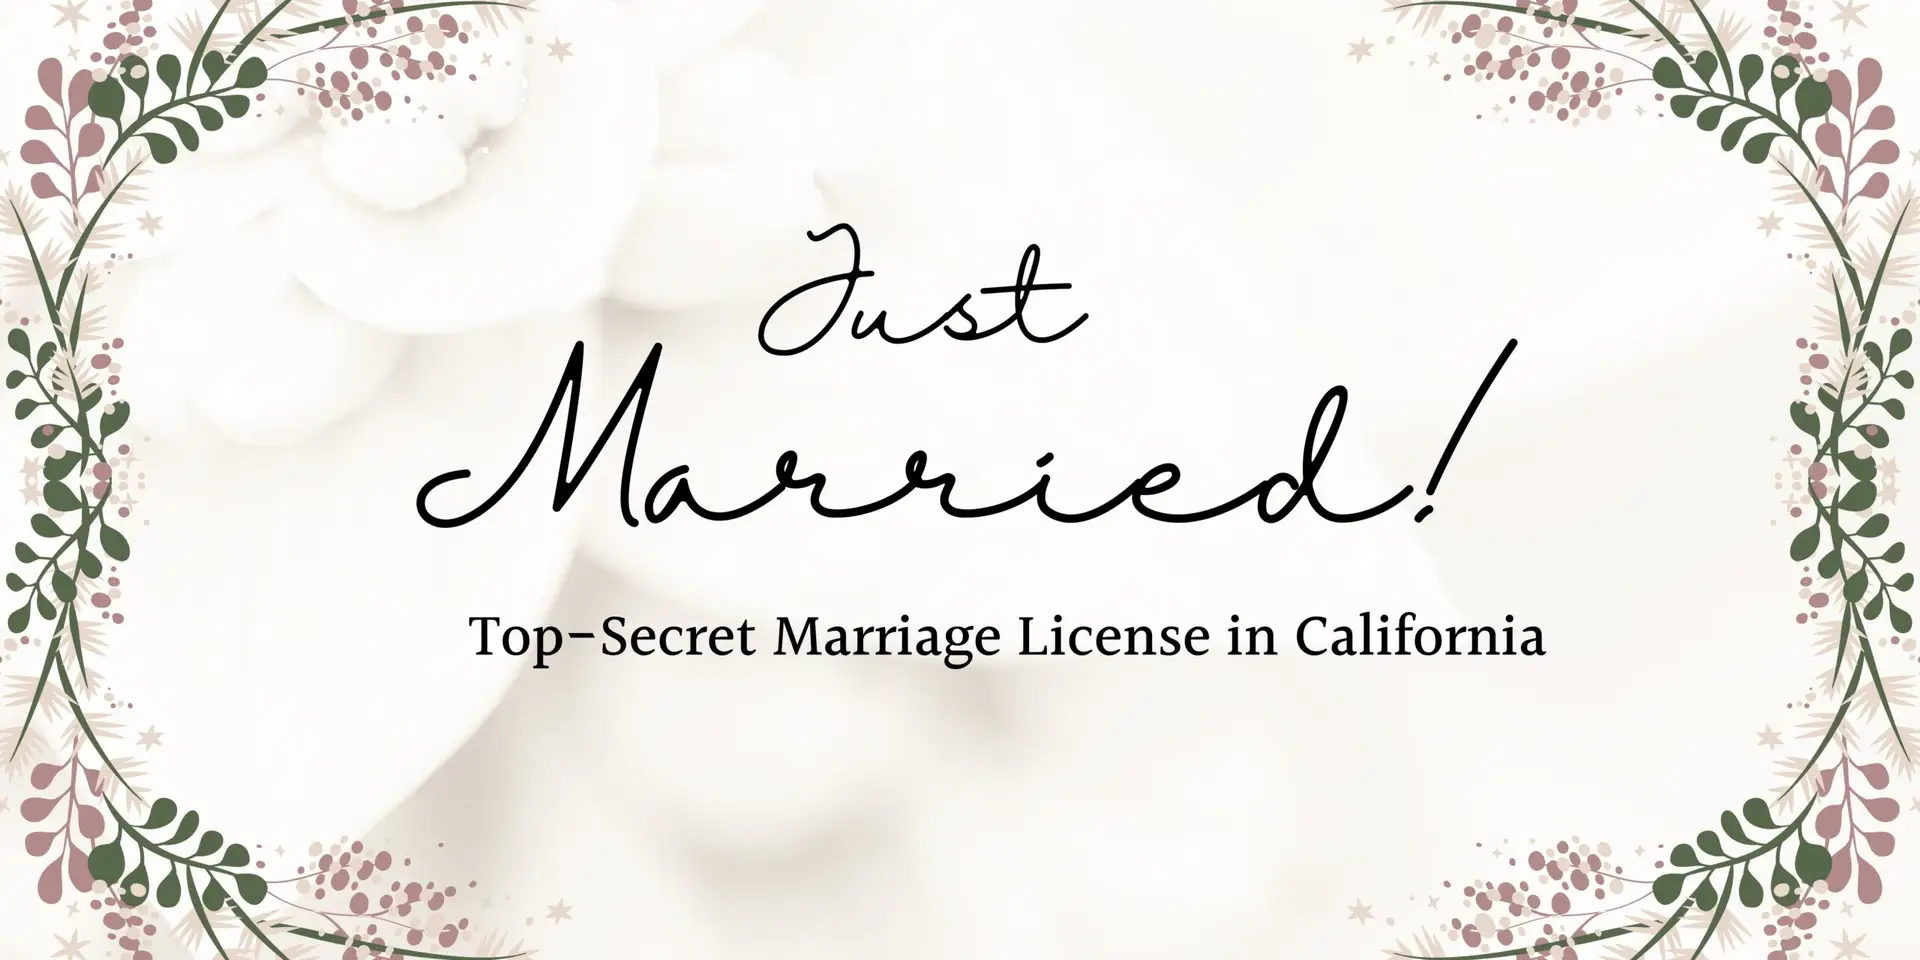 Confidential Marriage Licenses in California